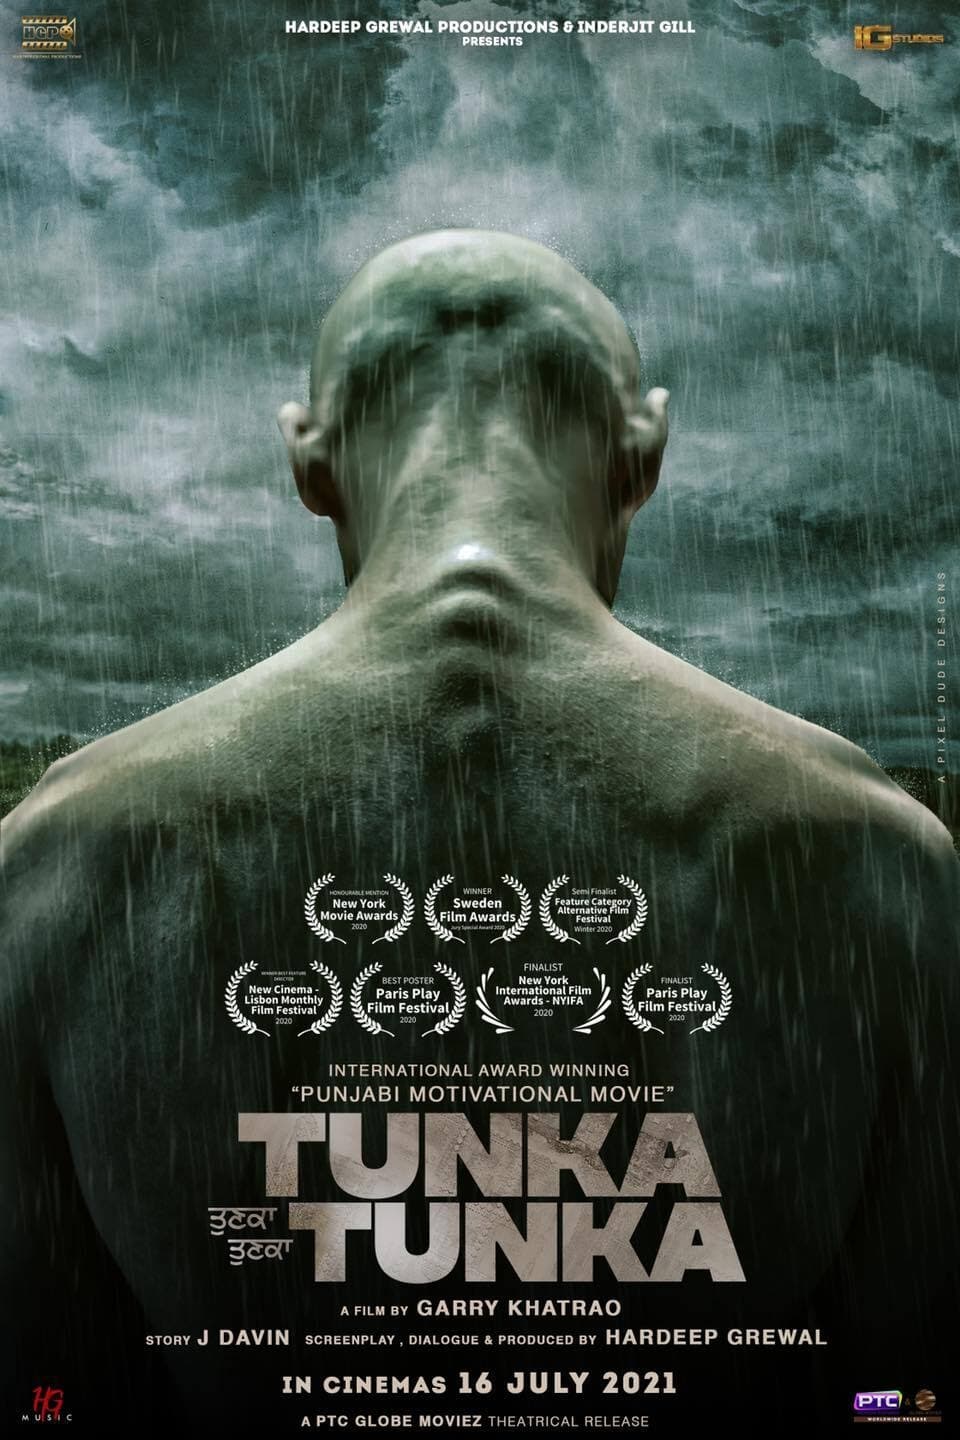 Poster for the movie "Tunka Tunka"